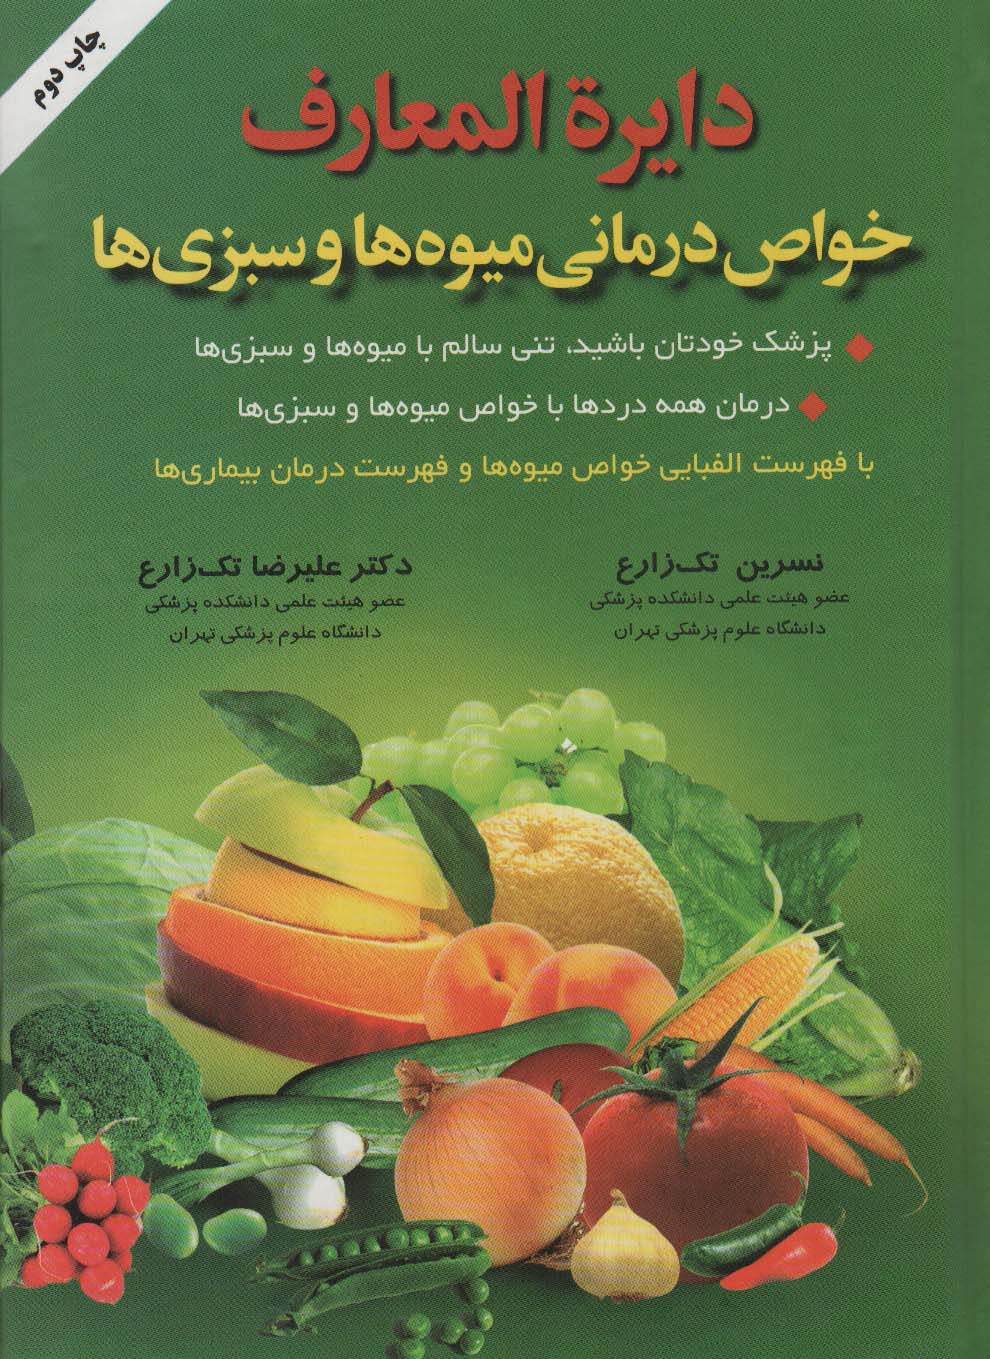  کتاب دایره المعارف خواص درمانی میوه ها و سبزی ها